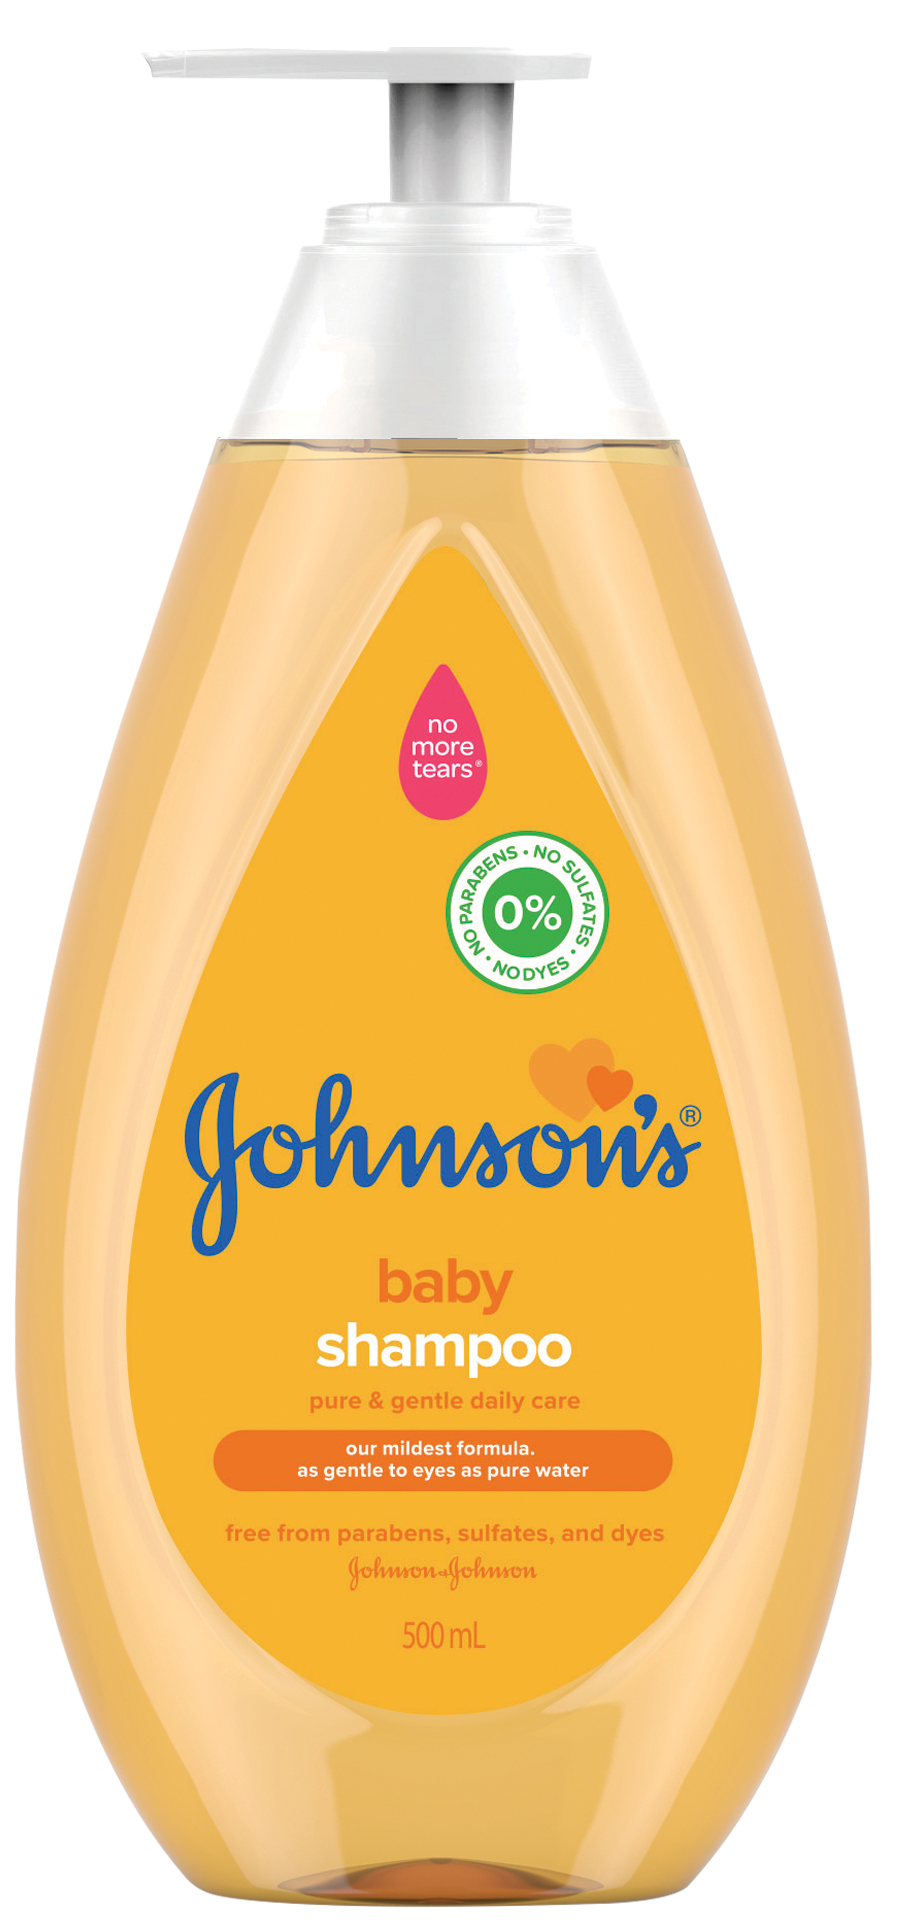 Sampon, Johnson's Baby, 500 ml